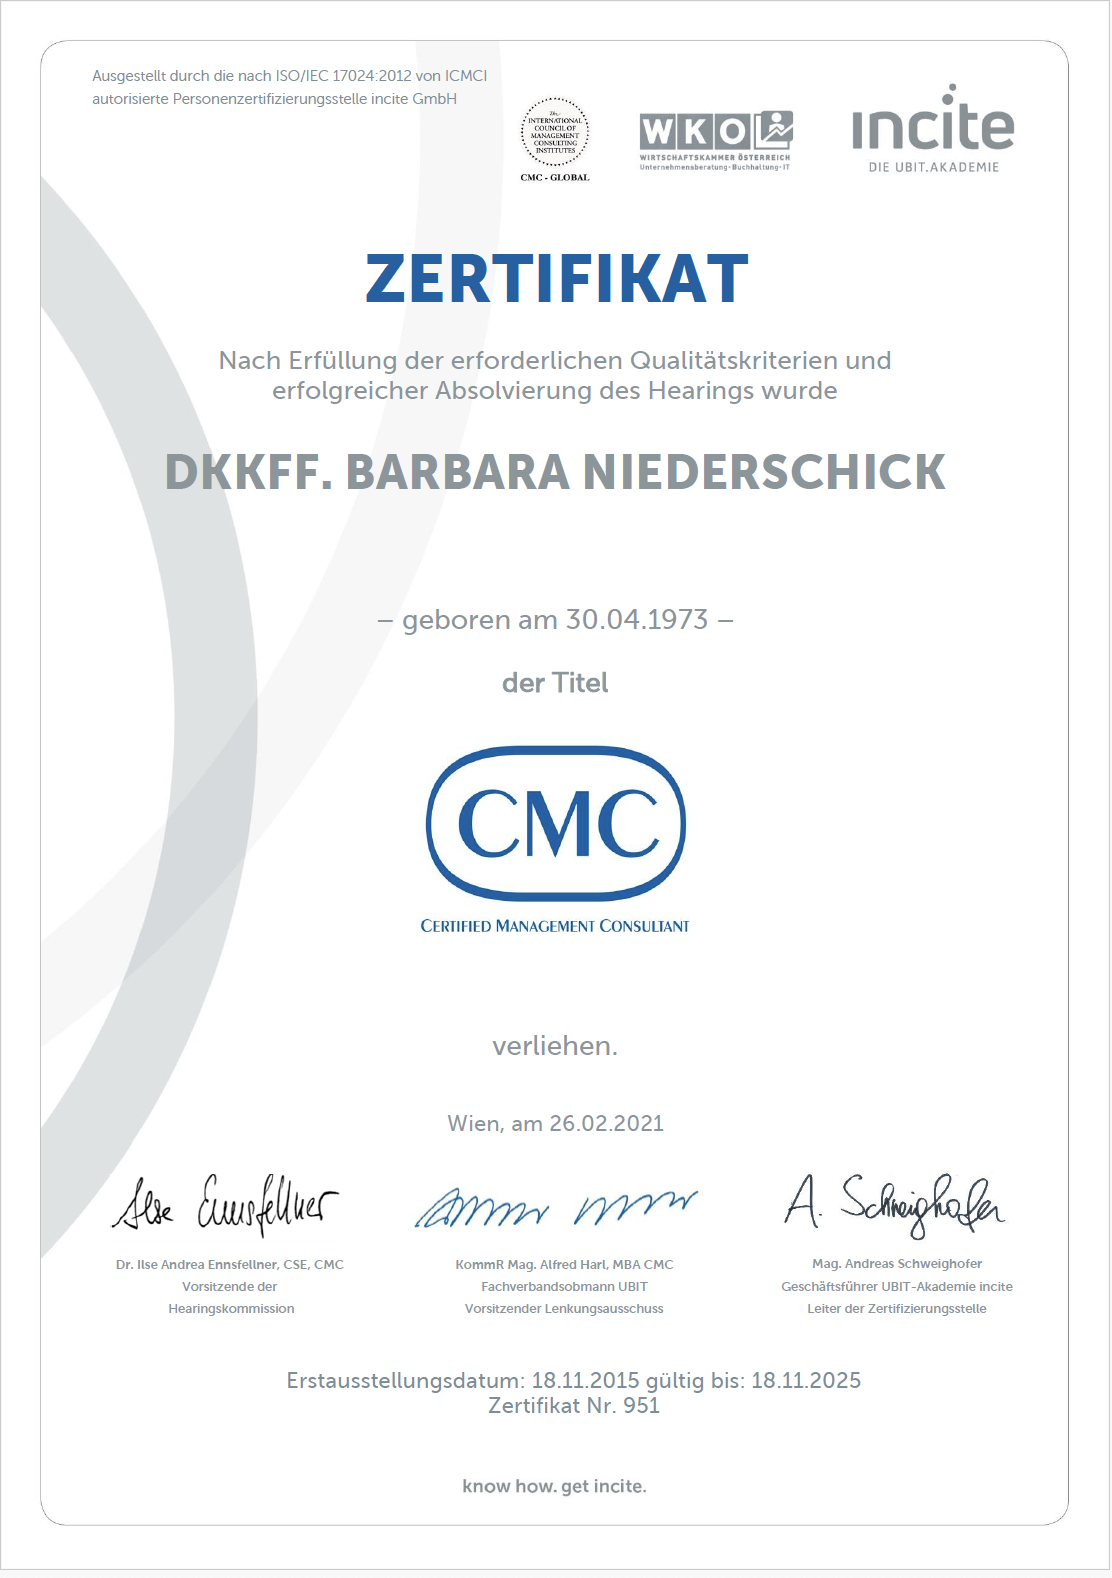 CMC Zertifikat Certified Management Consultant Barbara Niederschick